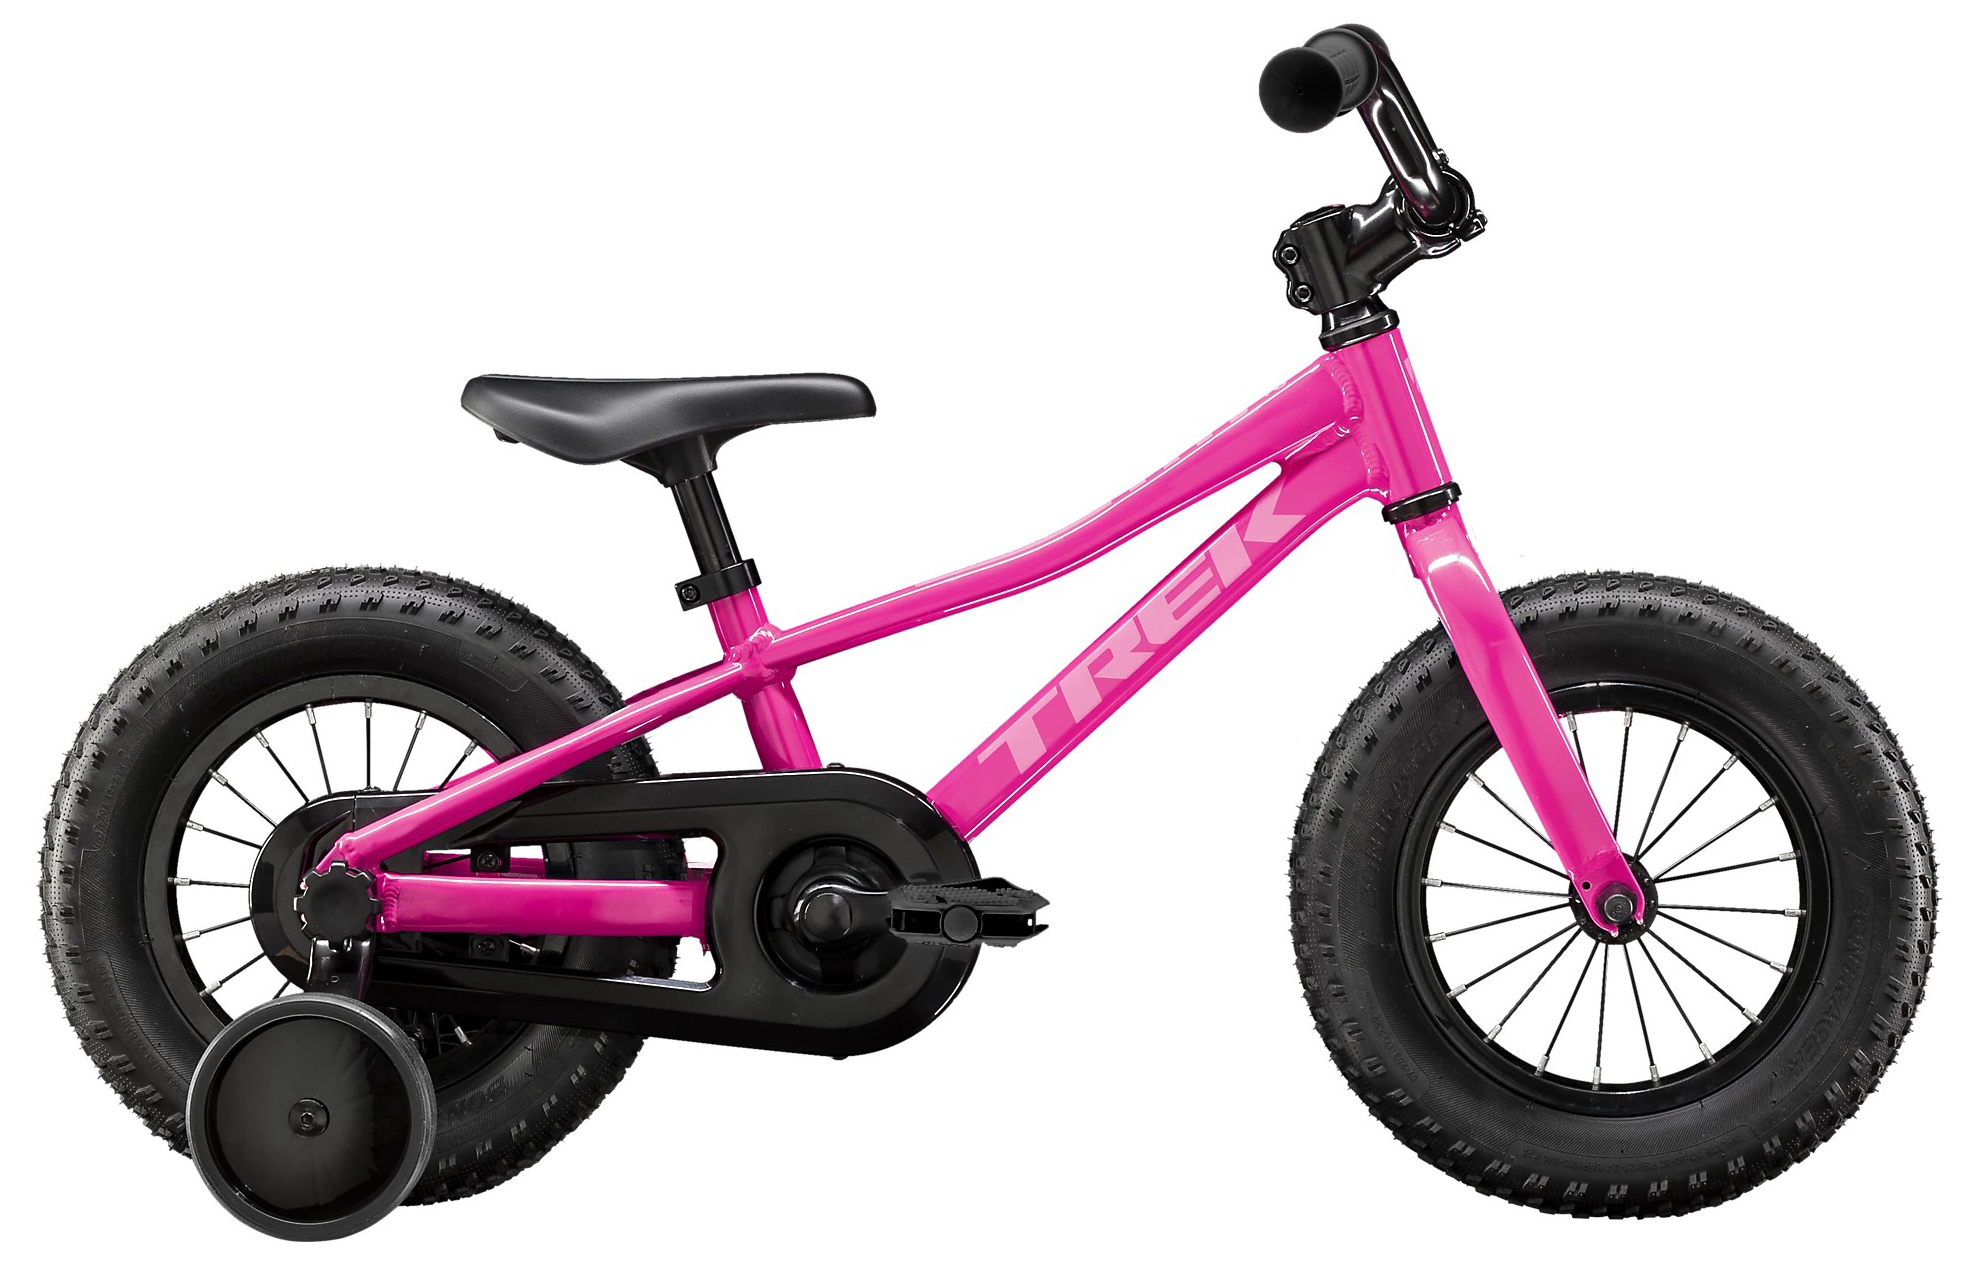  Отзывы о Детском велосипеде Trek PreCaliber 12 Girls 2020